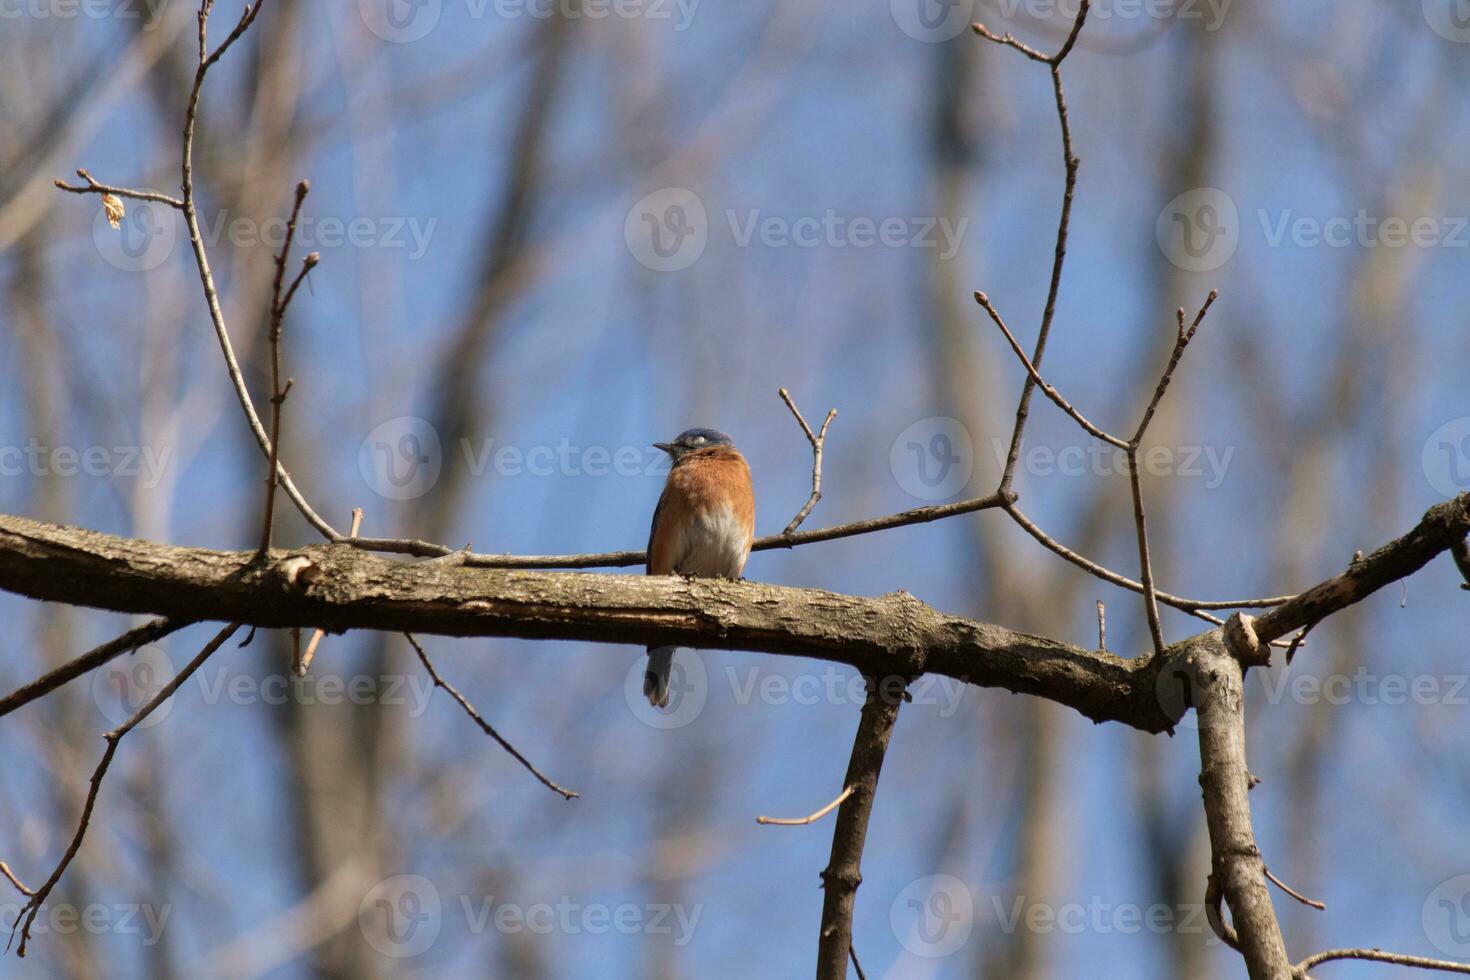 schattig weinig blauwe vogel za neergestreken Aan deze boom Afdeling naar kijken in de omgeving van voor voedsel. zijn roestig oranje buik met een wit lap staat uit van de blauw Aan zijn hoofd. deze weinig vogel voelt veilig omhoog hier. foto